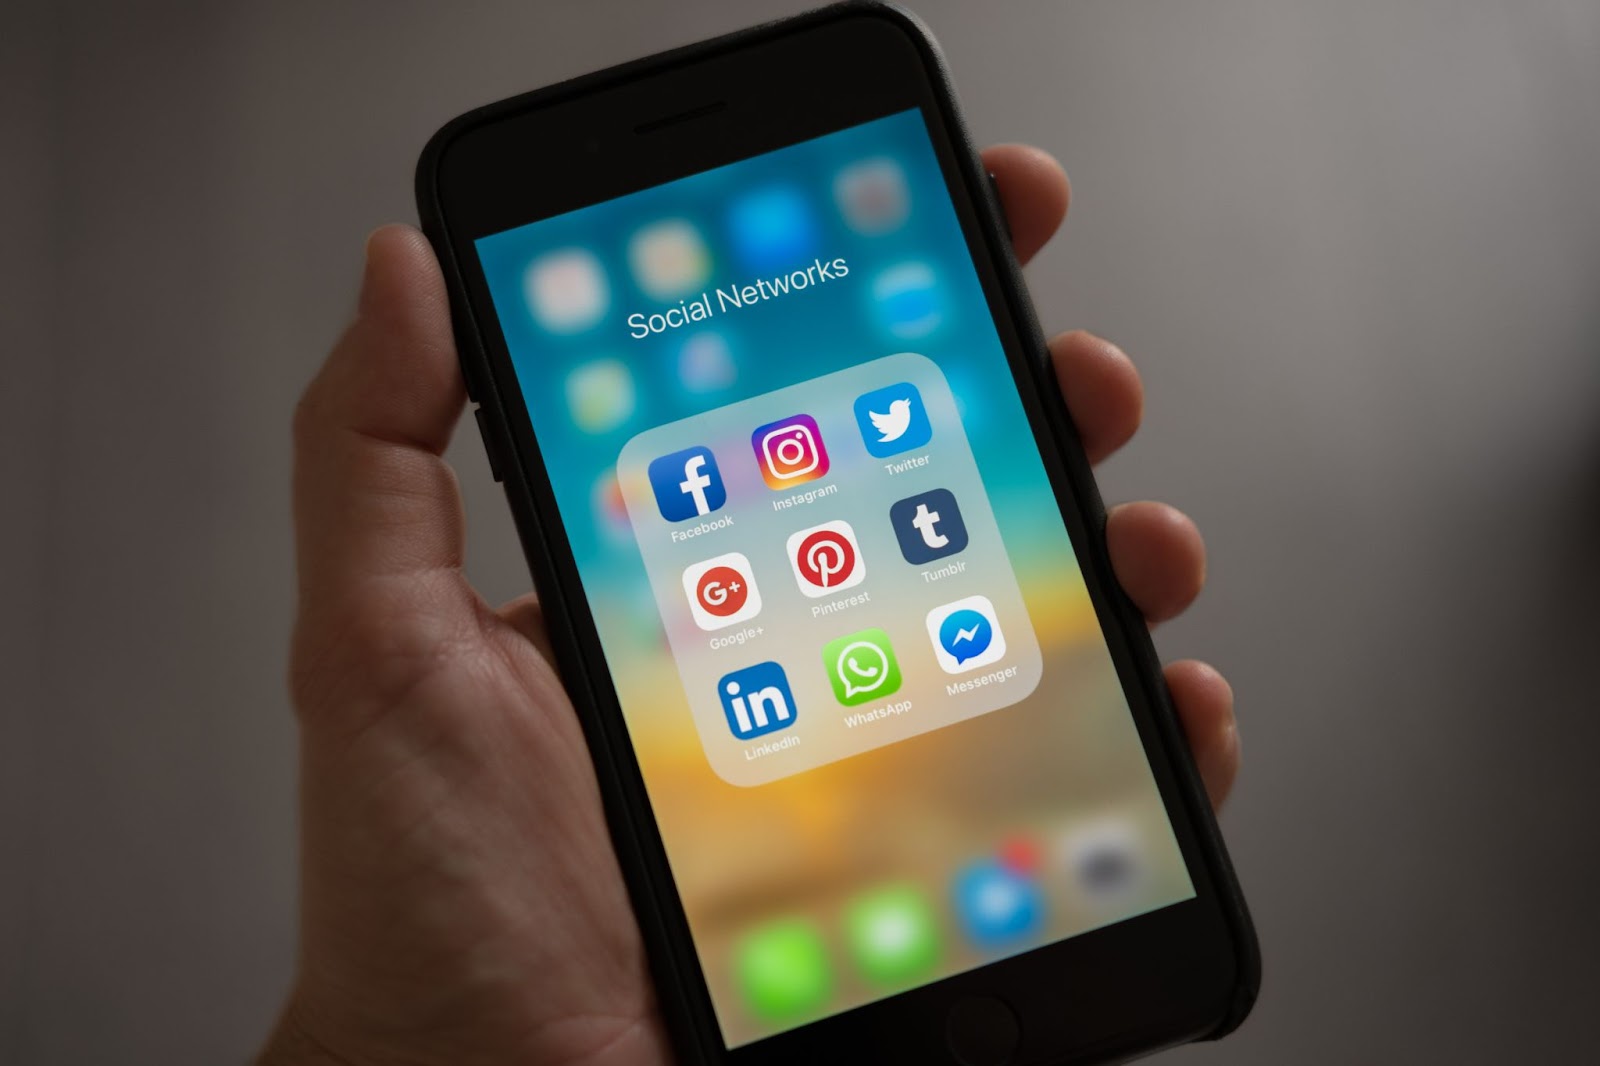 Social Media Platforms depicted on a smartphone